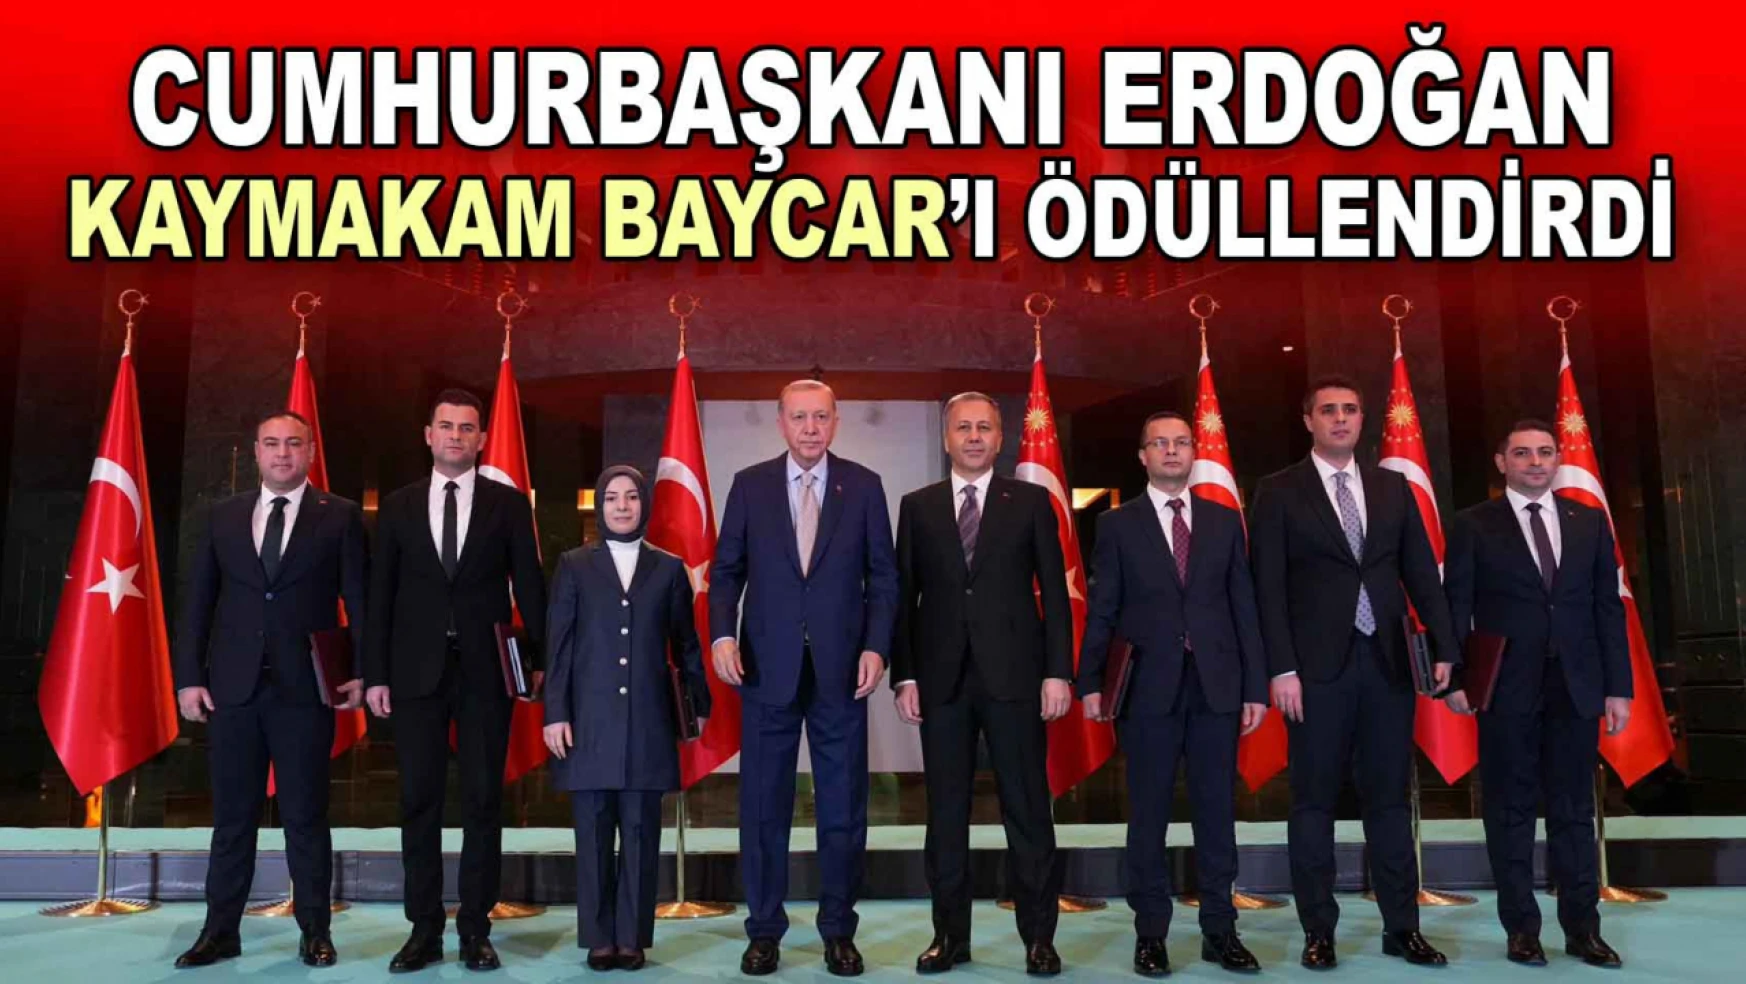 Cumhurbaşkanı Erdoğan, Kaymakam Baycar'ı Ödüllendirdi